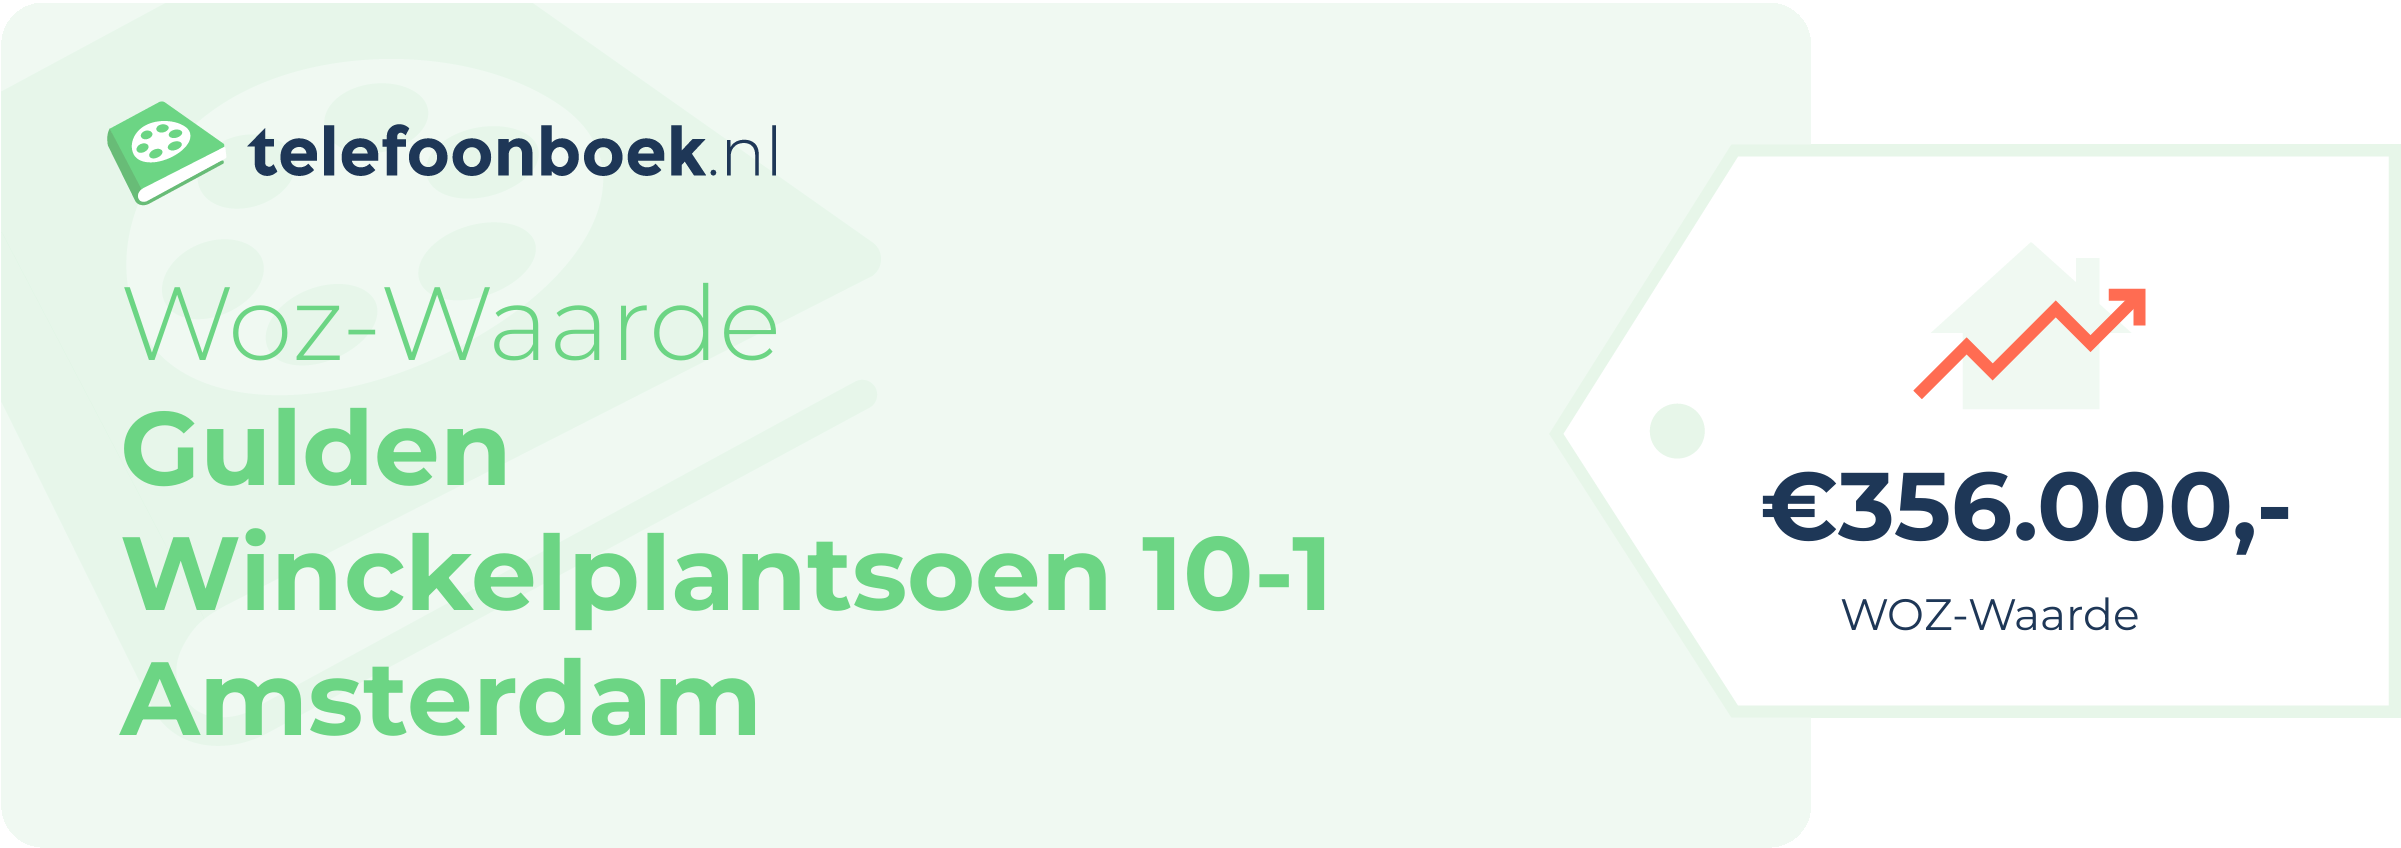 WOZ-waarde Gulden Winckelplantsoen 10-1 Amsterdam